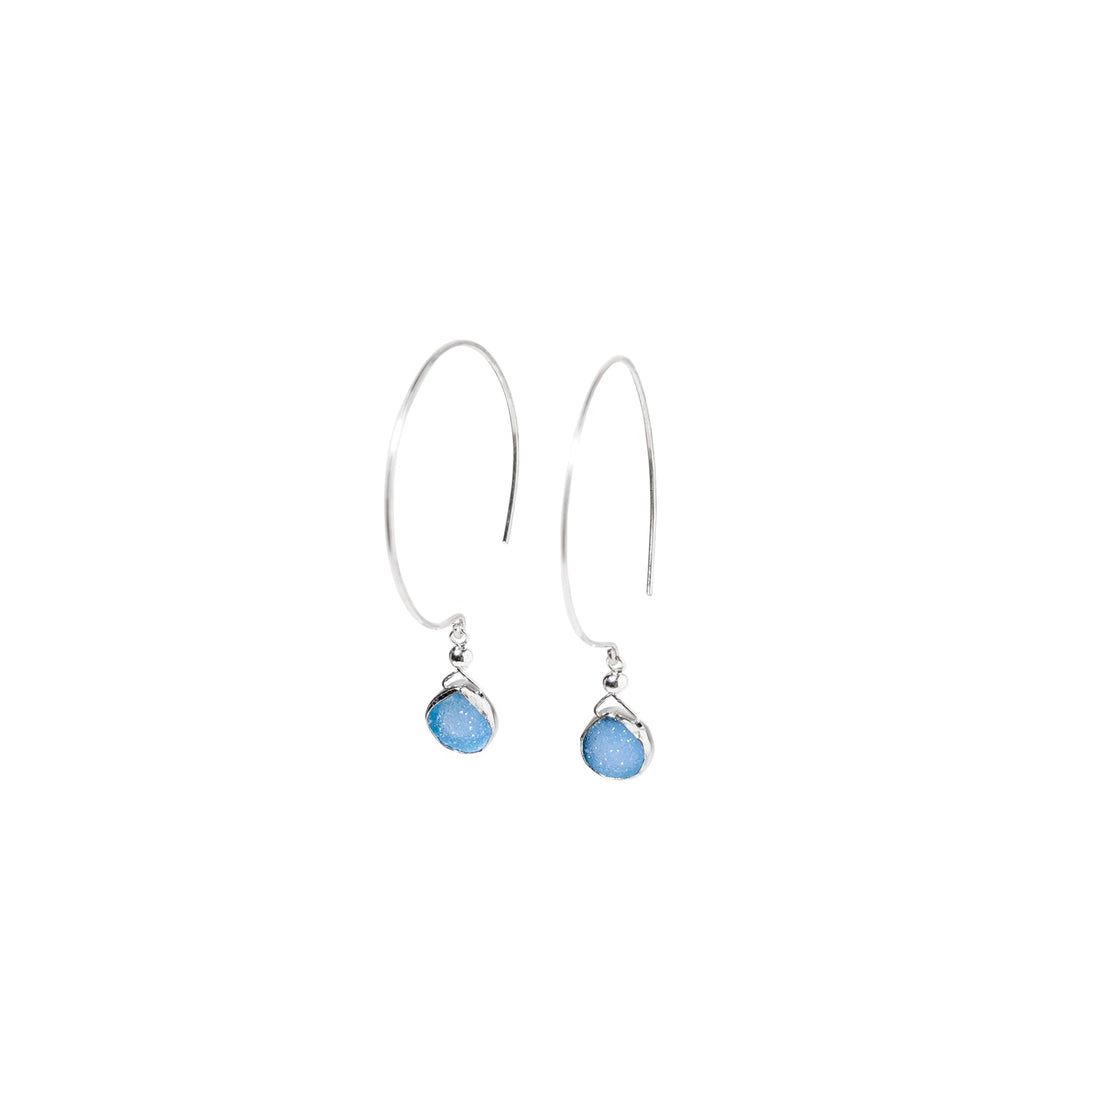 Kelly Earrings, Blue Druzy Pear with Classic Silver Bezel Earrings Sayulita Sol 